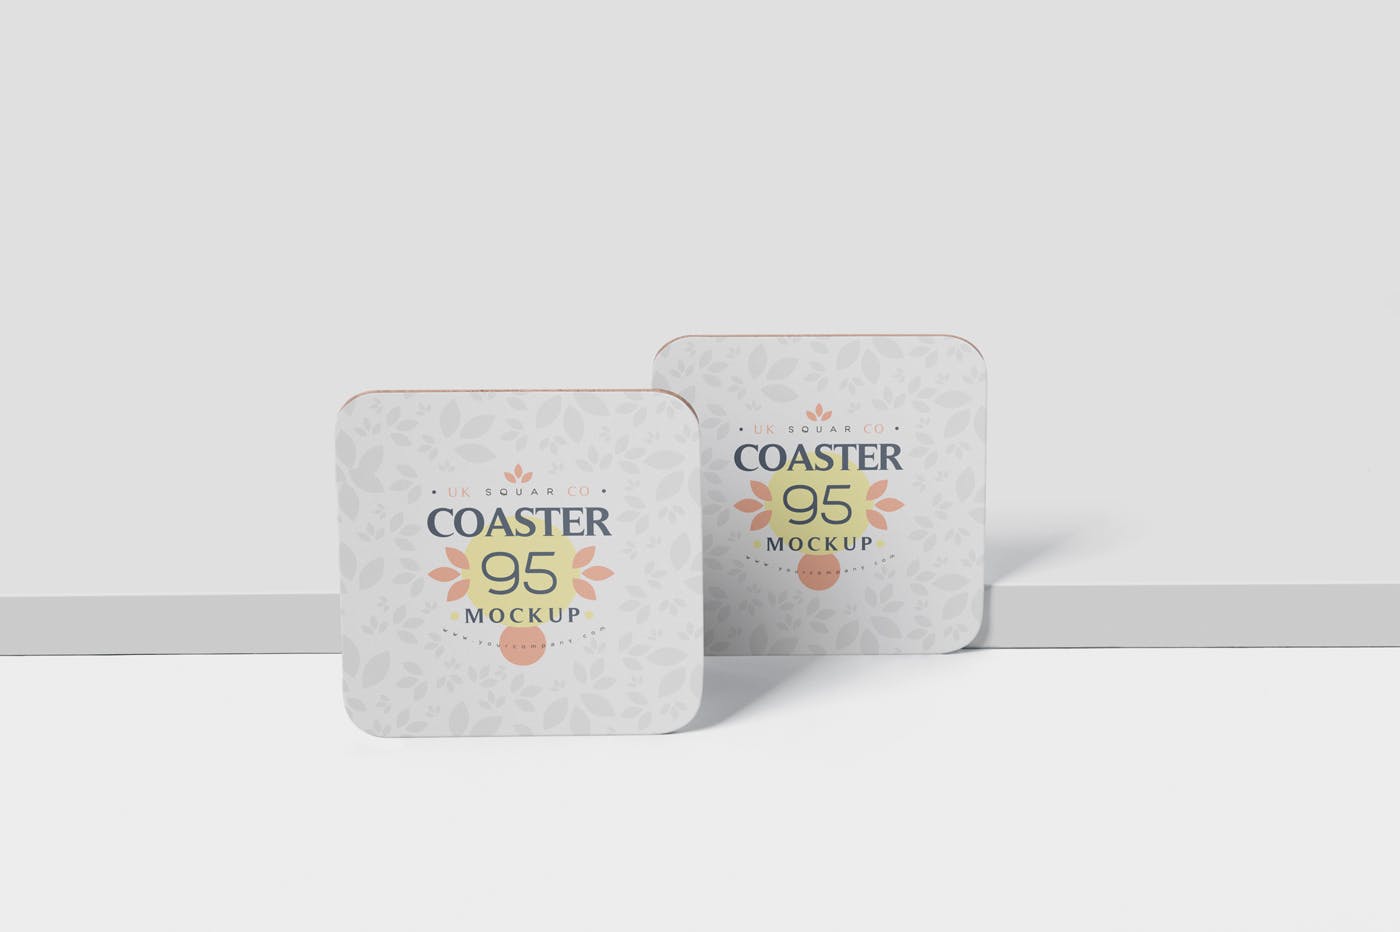 圆角方形杯垫图案设计素材库精选模板 Square Coaster Mock-Up with Round Corner插图(3)